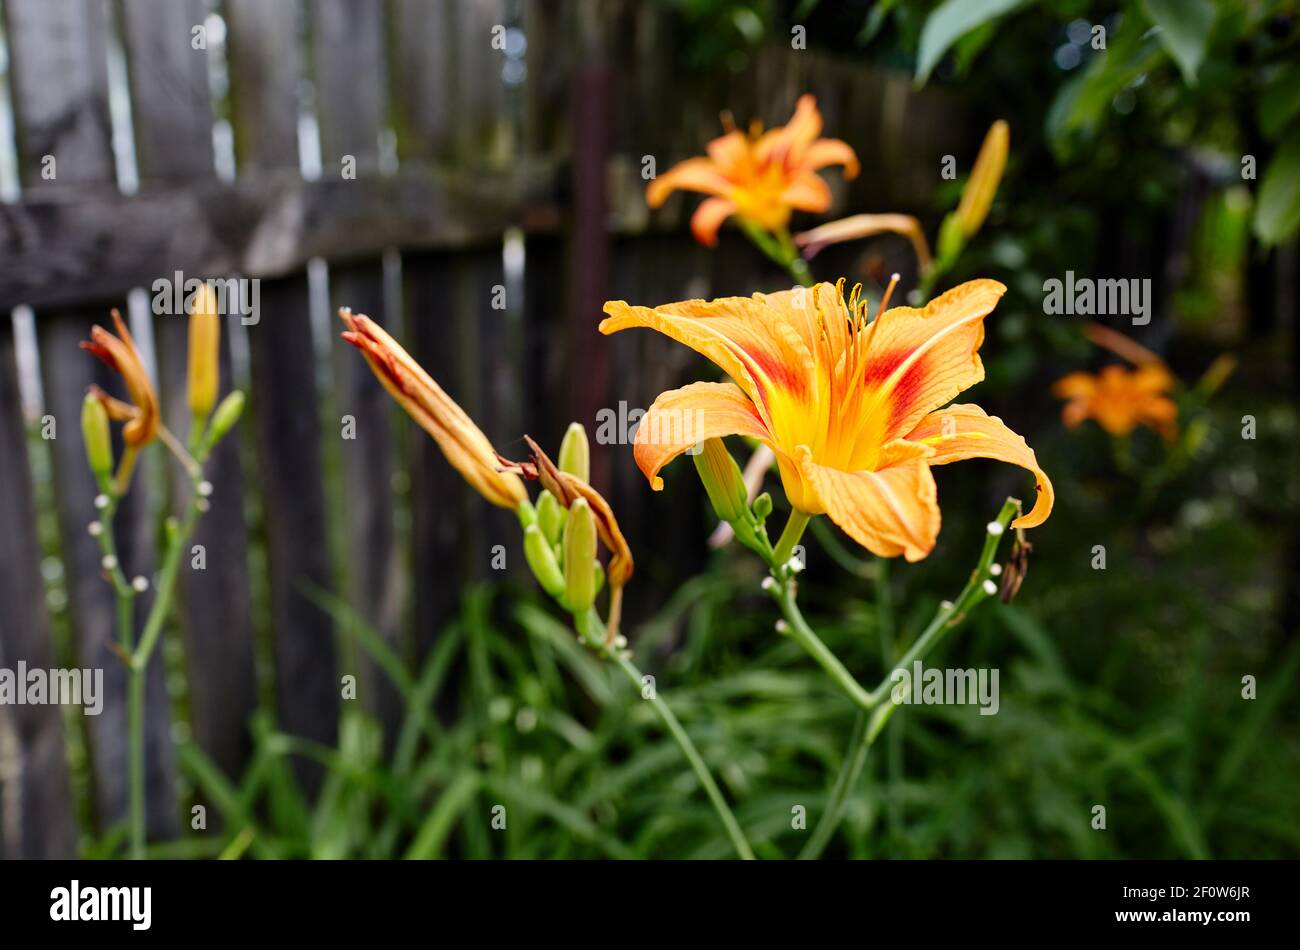 Schöne Lilie Blume auf grünen Blättern Hintergrund. Schöne Frühling oder Sommer blühende Lilie Pflanze. Stockfoto